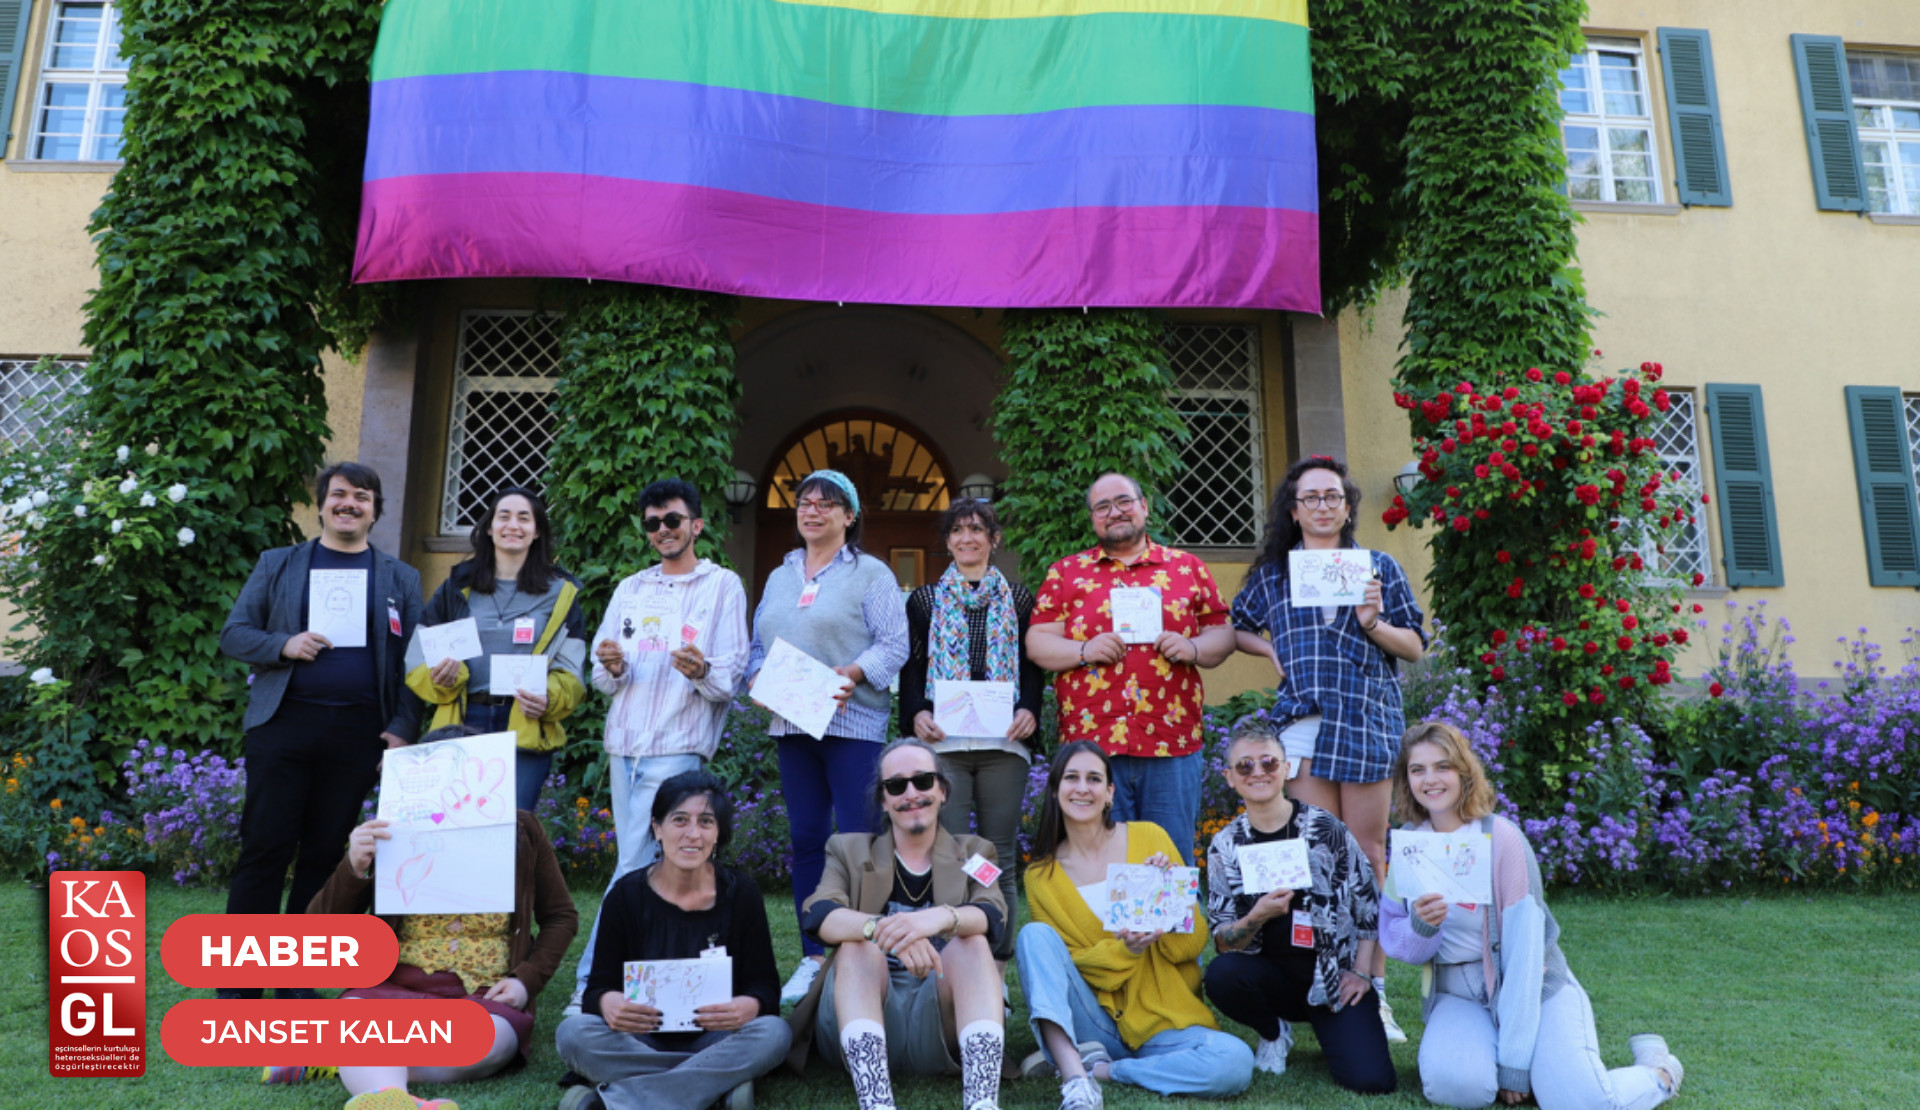 17 Mayıs Derneği’nin ismini de aldığı 17 Mayıs Uluslararası Homofobi, Bifobi, İnterfobi ve Transfobi Karşıtlığı Günü, Ankara’da bu yıl da çeşitli etkinliklerle kutlandı | Kaos GL - LGBTİ+ Haber Portalı Haber